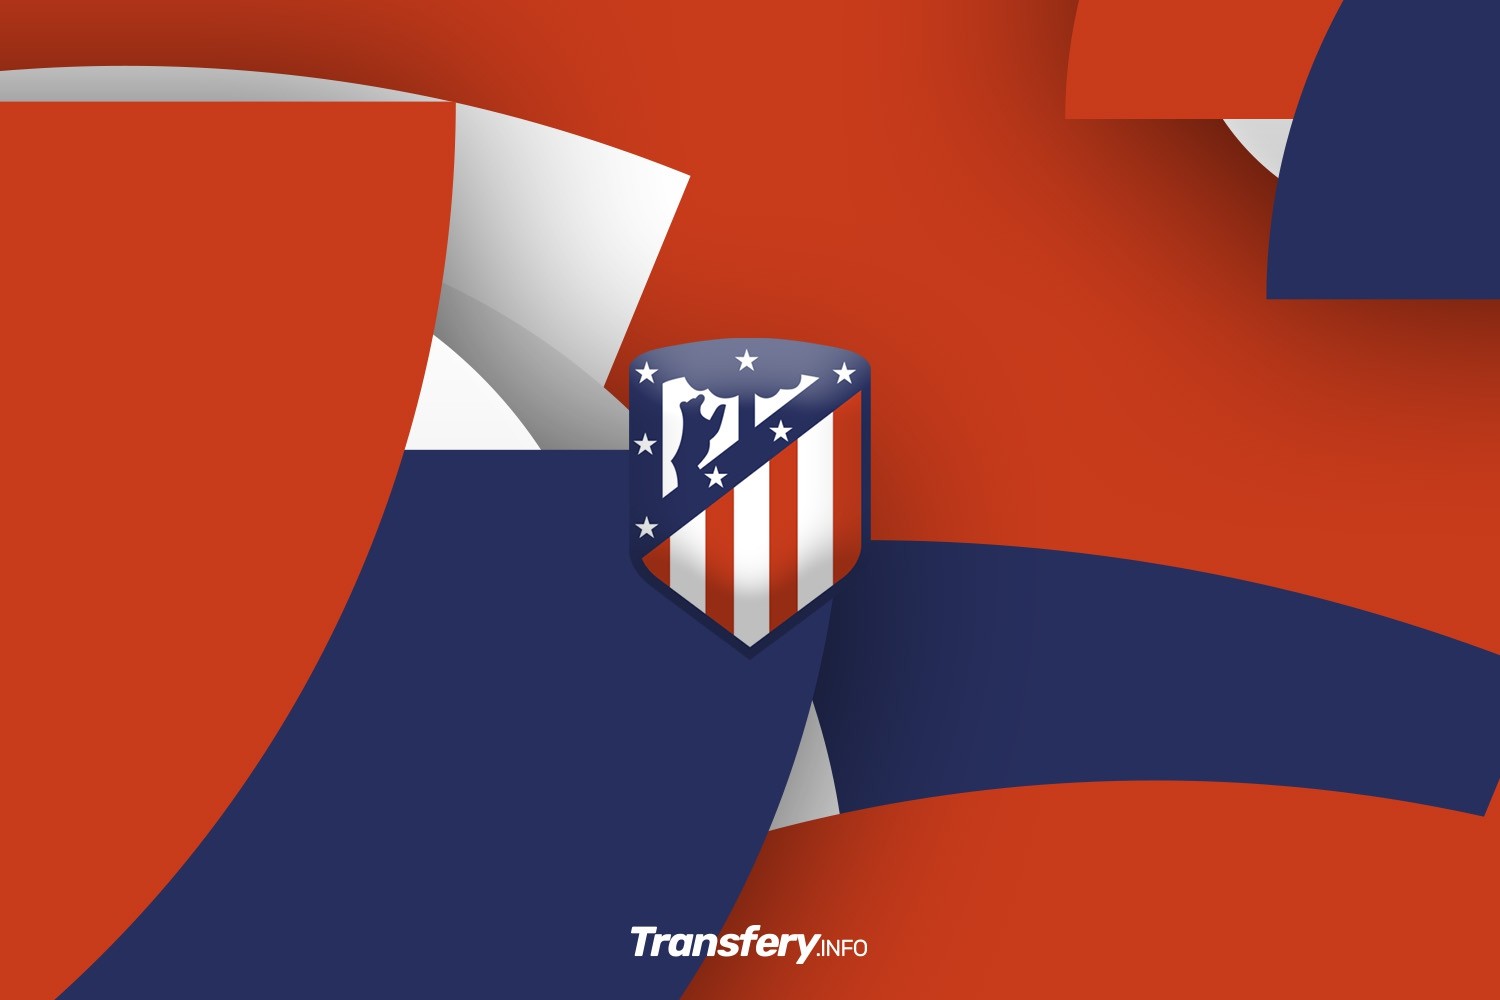 OFICJALNIE: Nehuén Pérez odszedł z Atlético Madryt. Zostaje w Serie A